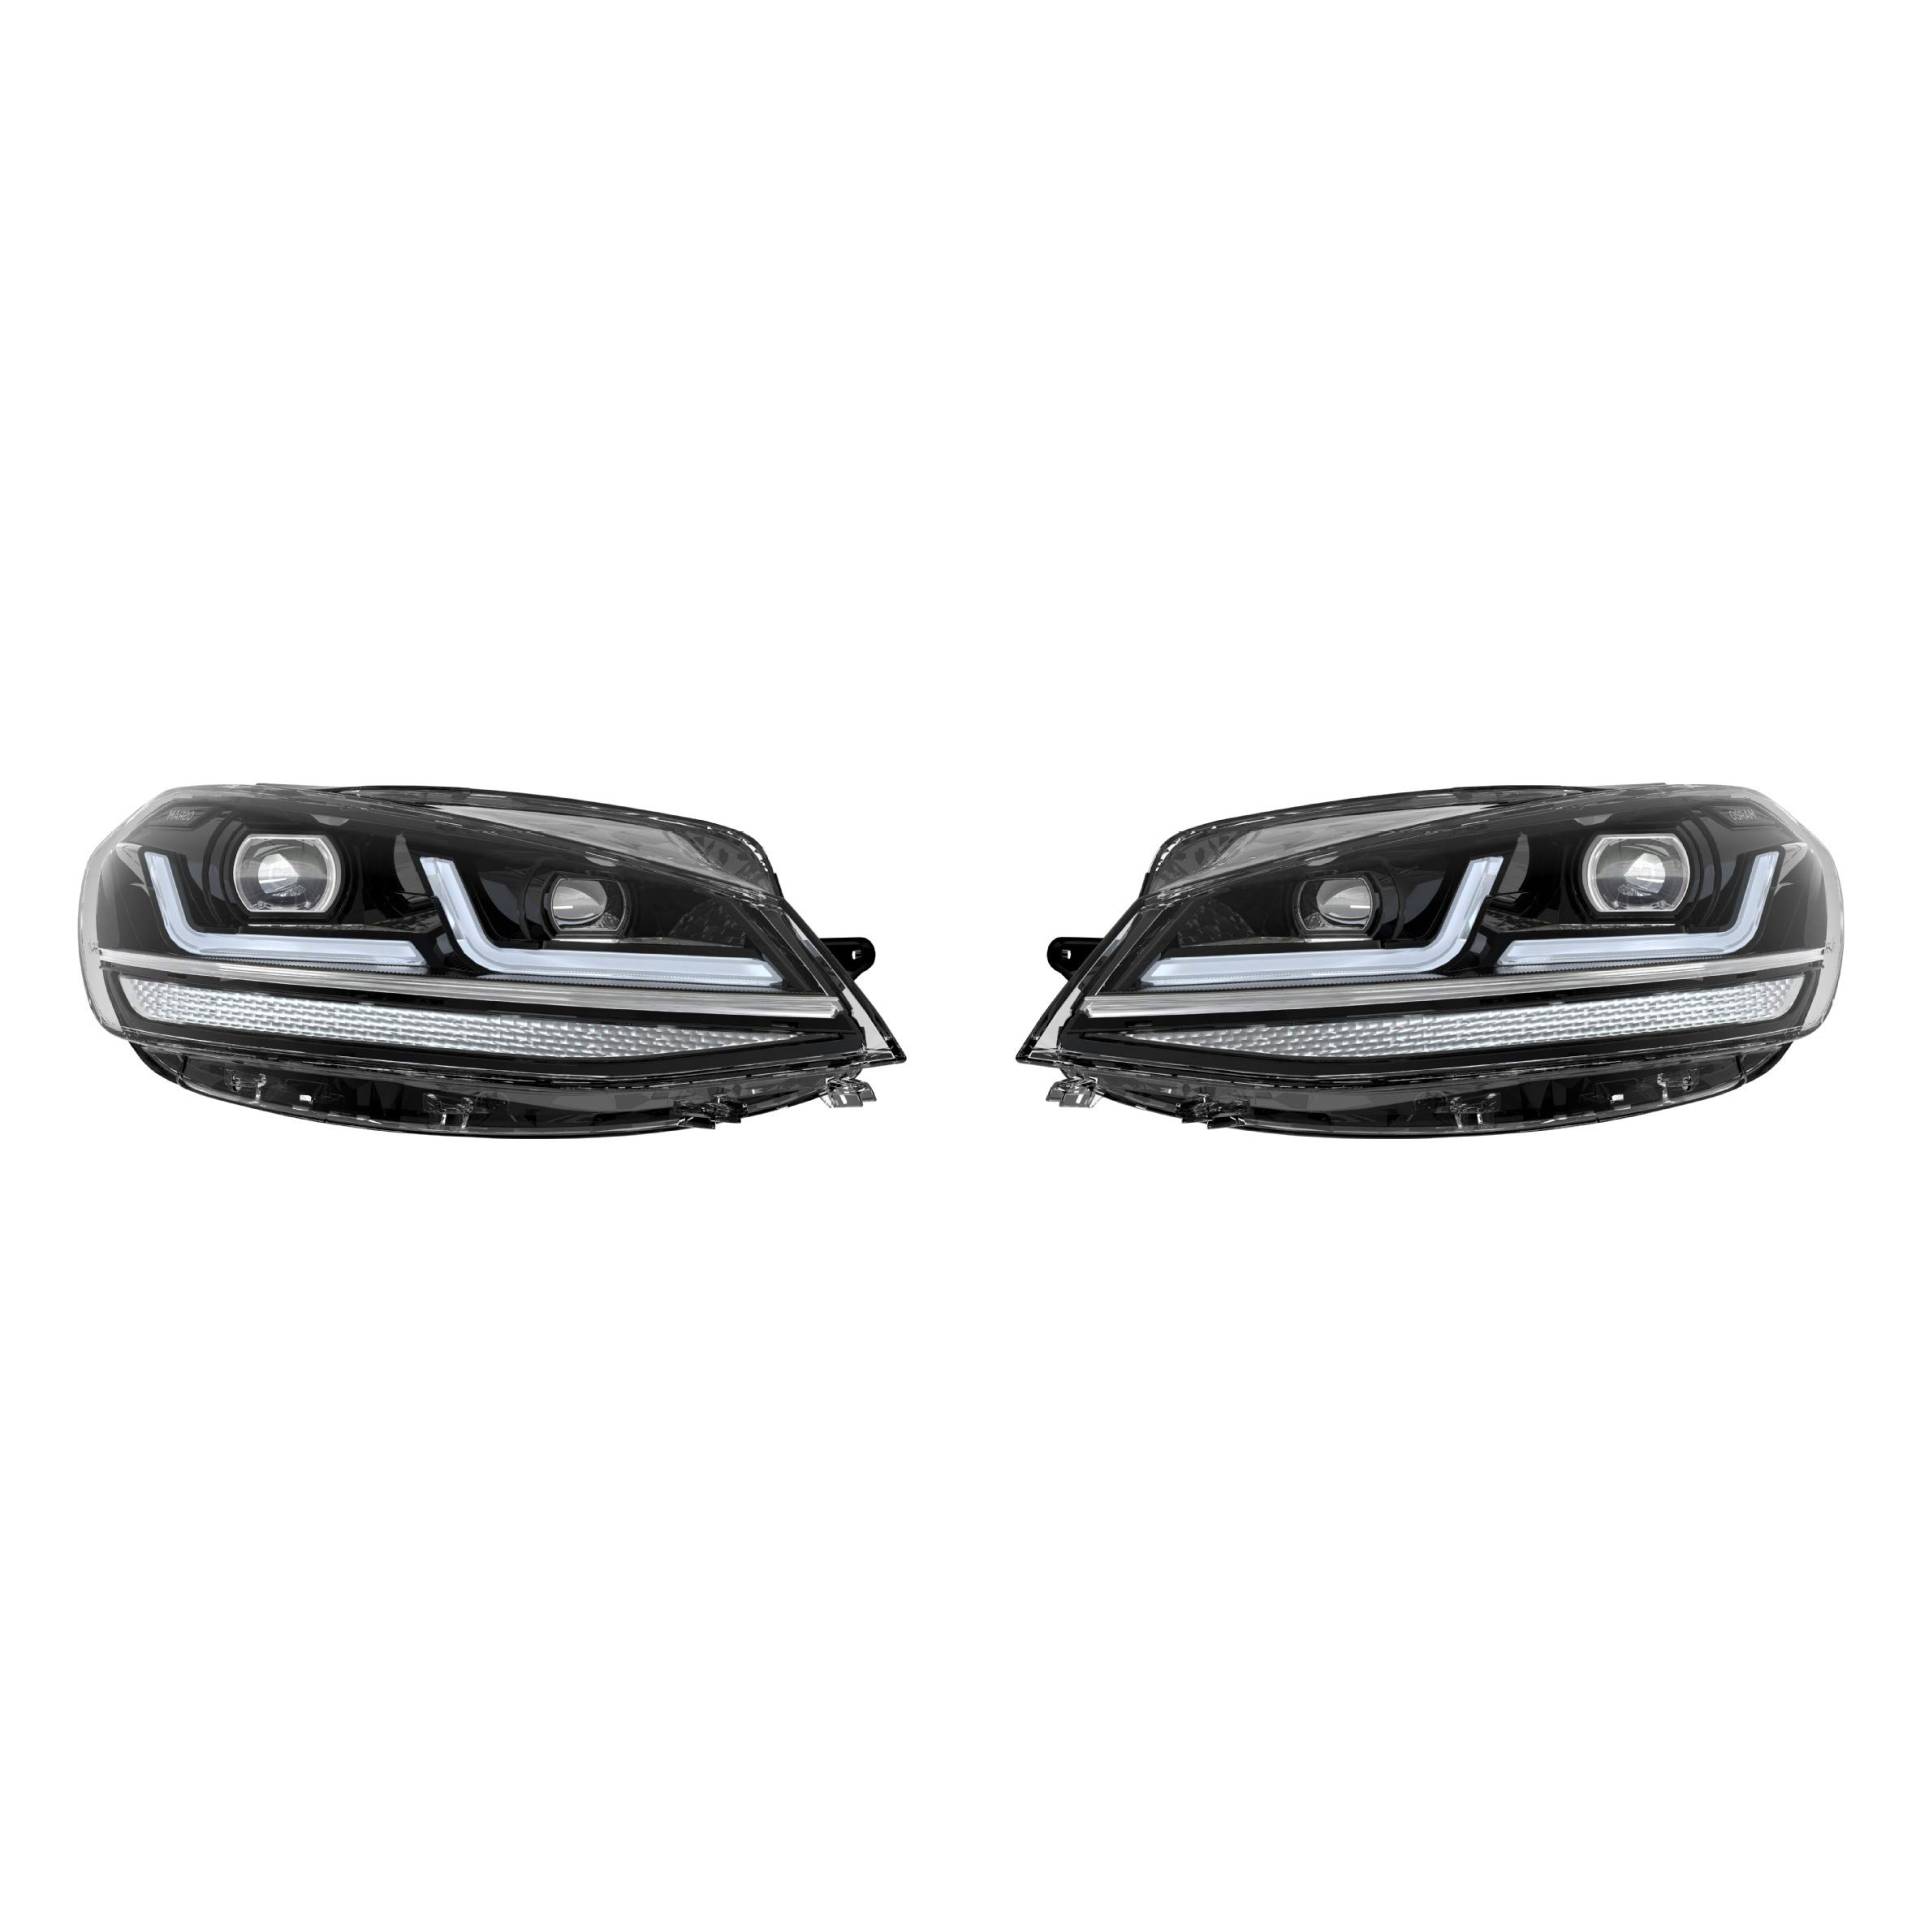 Osram LEDriving LED Scheinwerfer für VW Golf 7.5, Golf VII Facelift, Black Edition, Halogenersatz von Osram